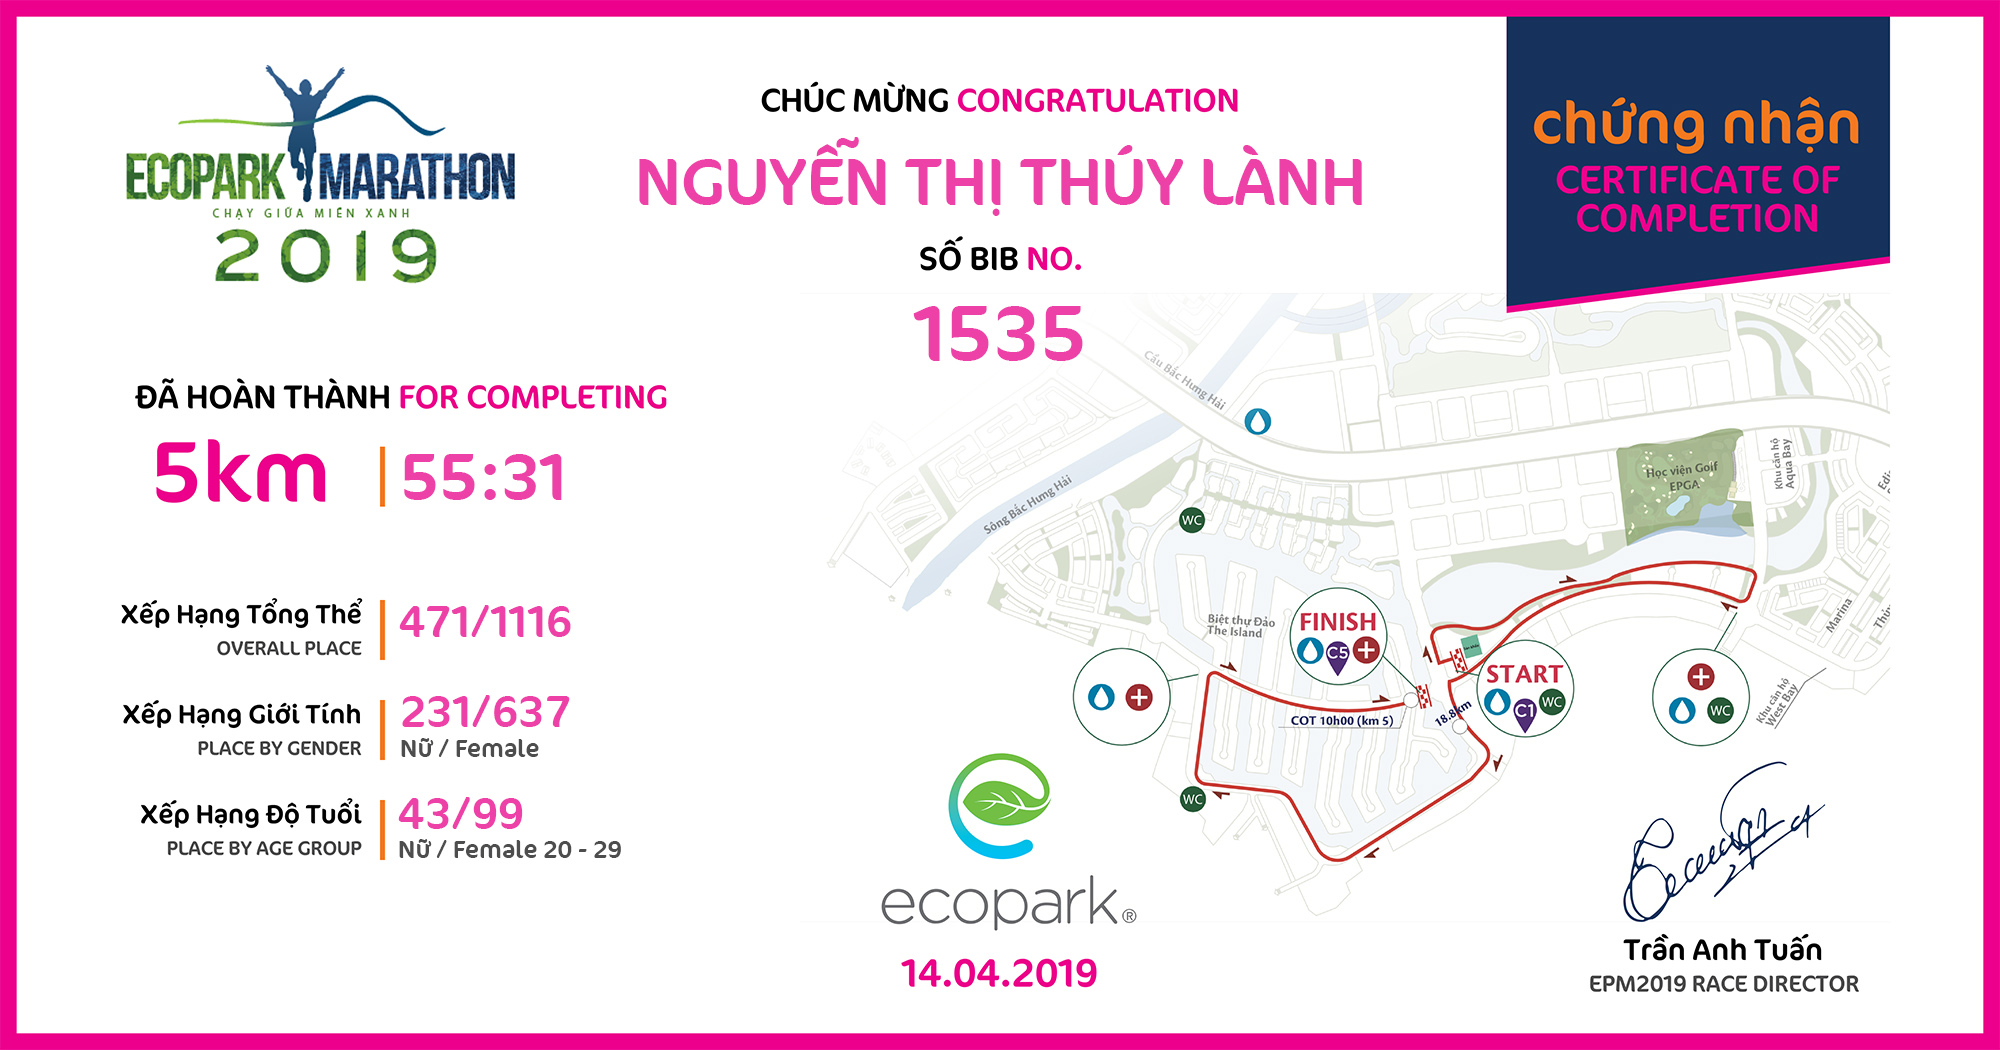 1535 - Nguyễn Thị Thúy Lành